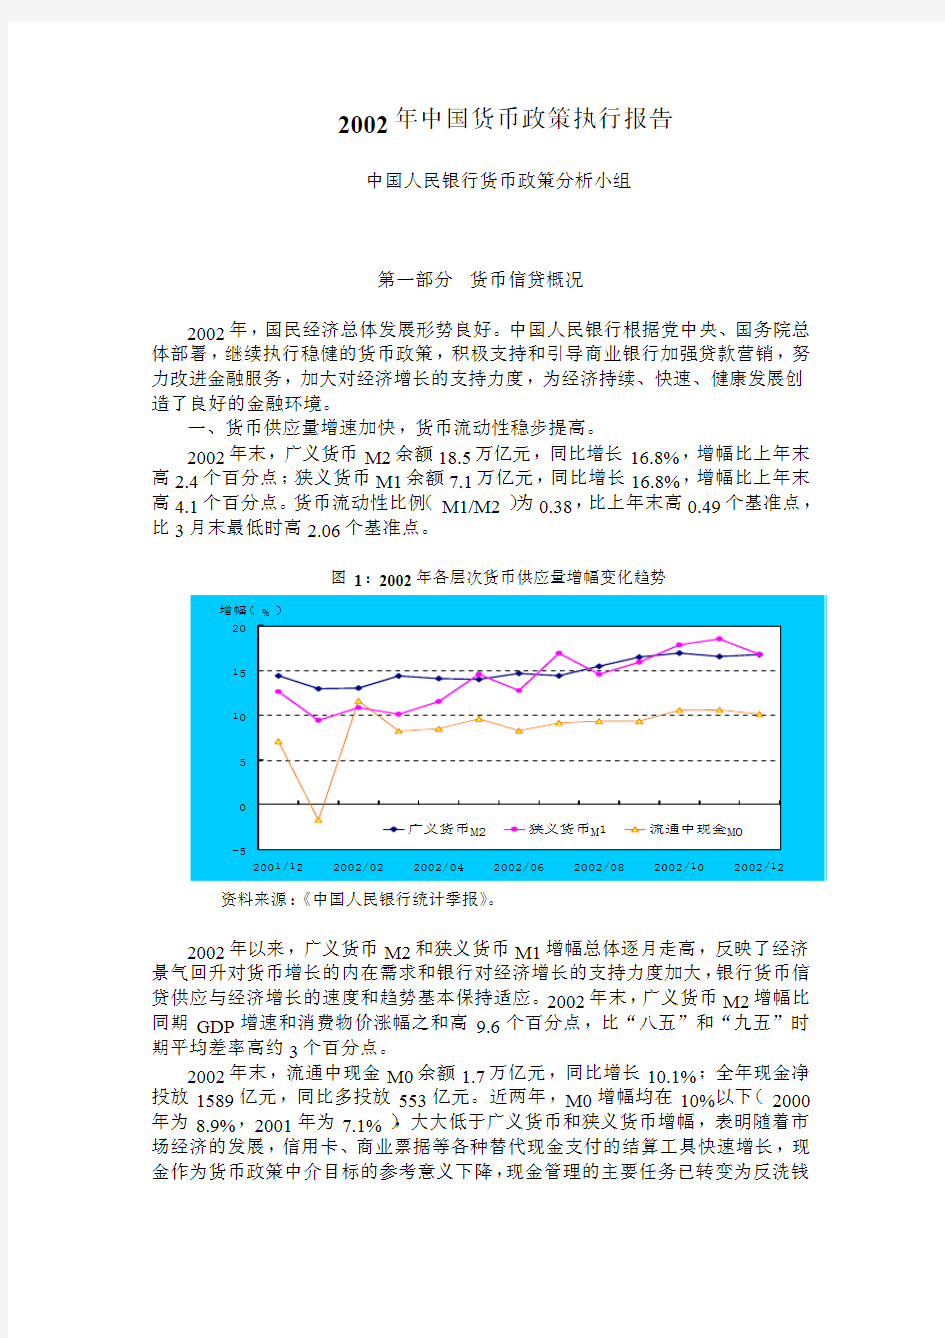 2002年中国货币政策执行报告